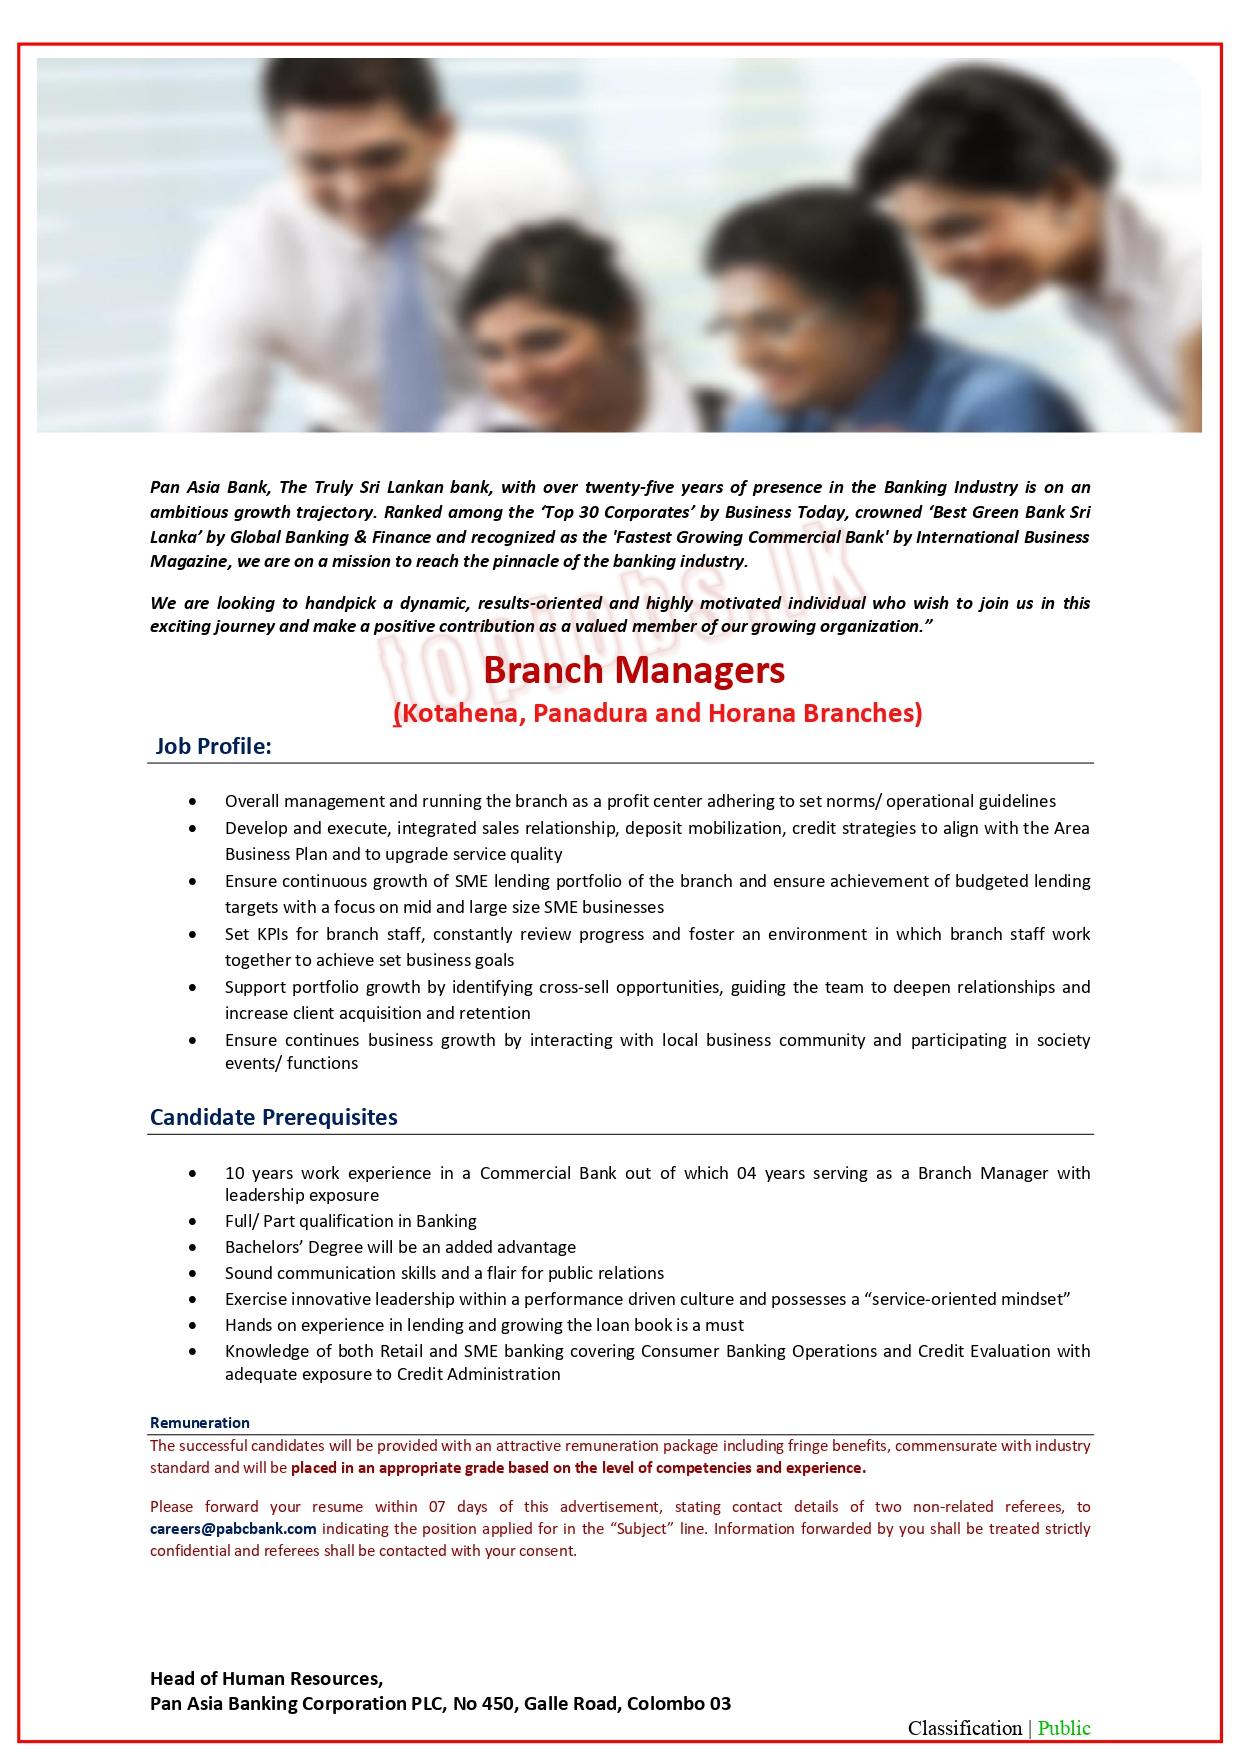 Pan Asia Bank Kotahena Branch Manager Vacancies 2022